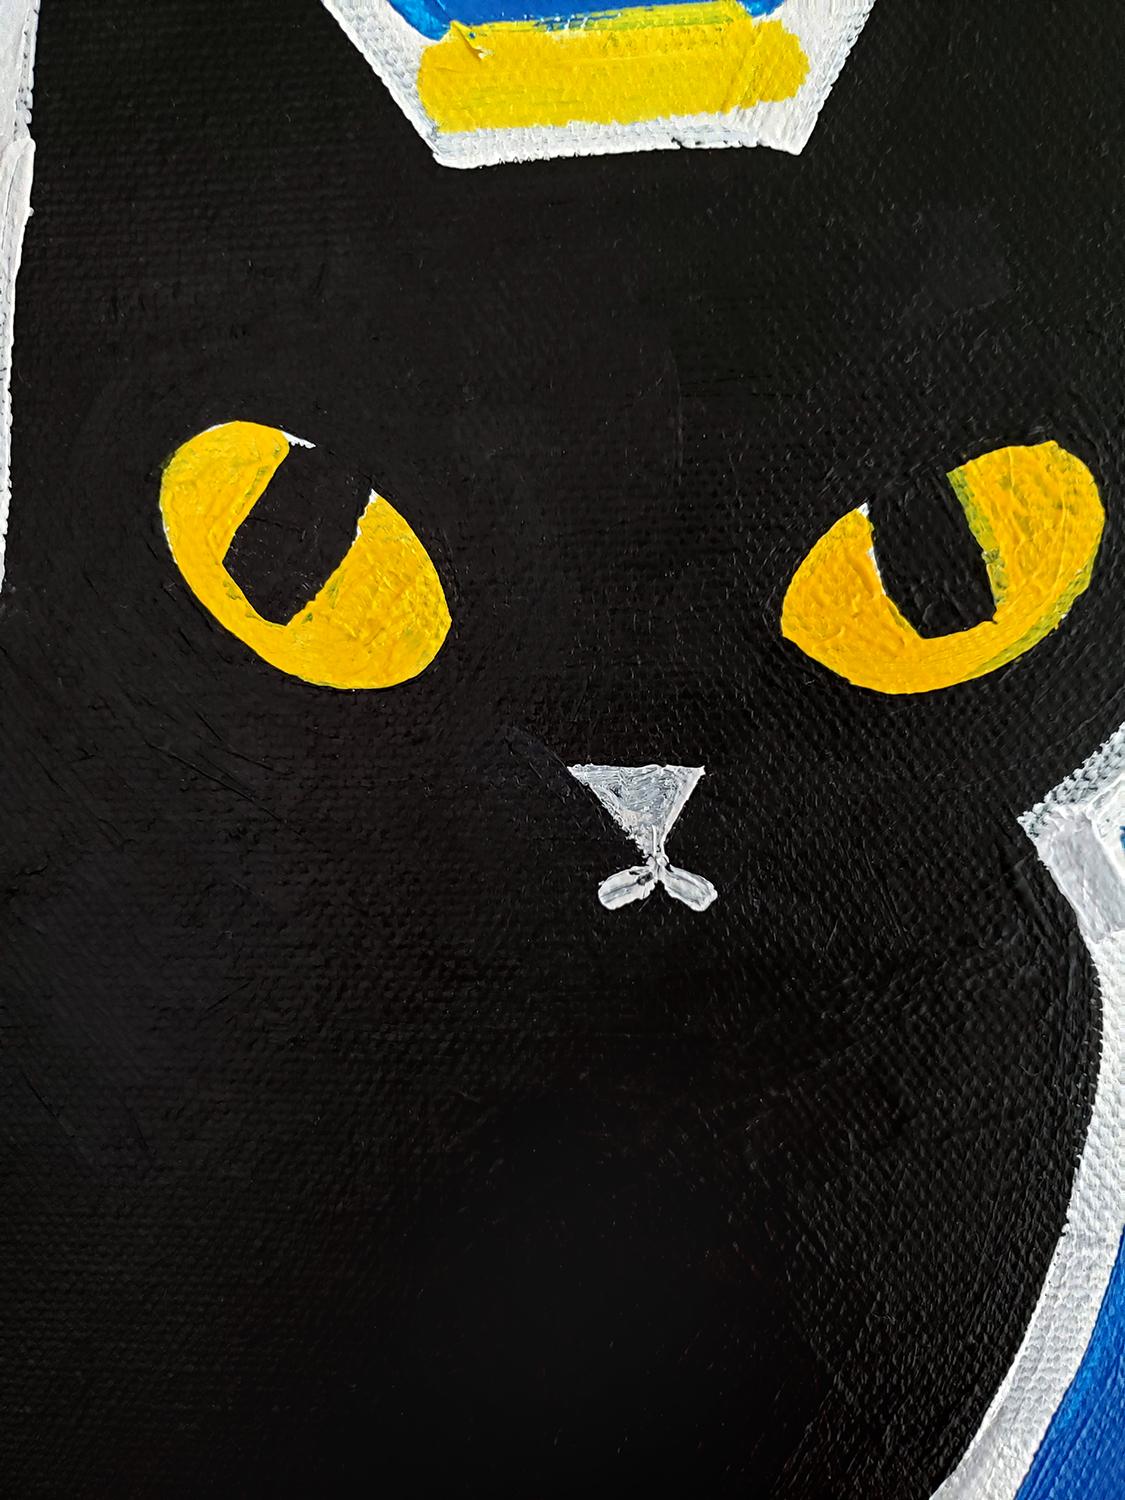 <p>Kommentare der Künstlerin<br>Die Künstlerin Jessica JH Roller malt ein primitivistisches Porträt ihrer Katze Rachel. Mit ihrem glatten schwarzen Fell und den auffallend gelben Augen strahlt die Katze in der gesamten Komposition eine starke